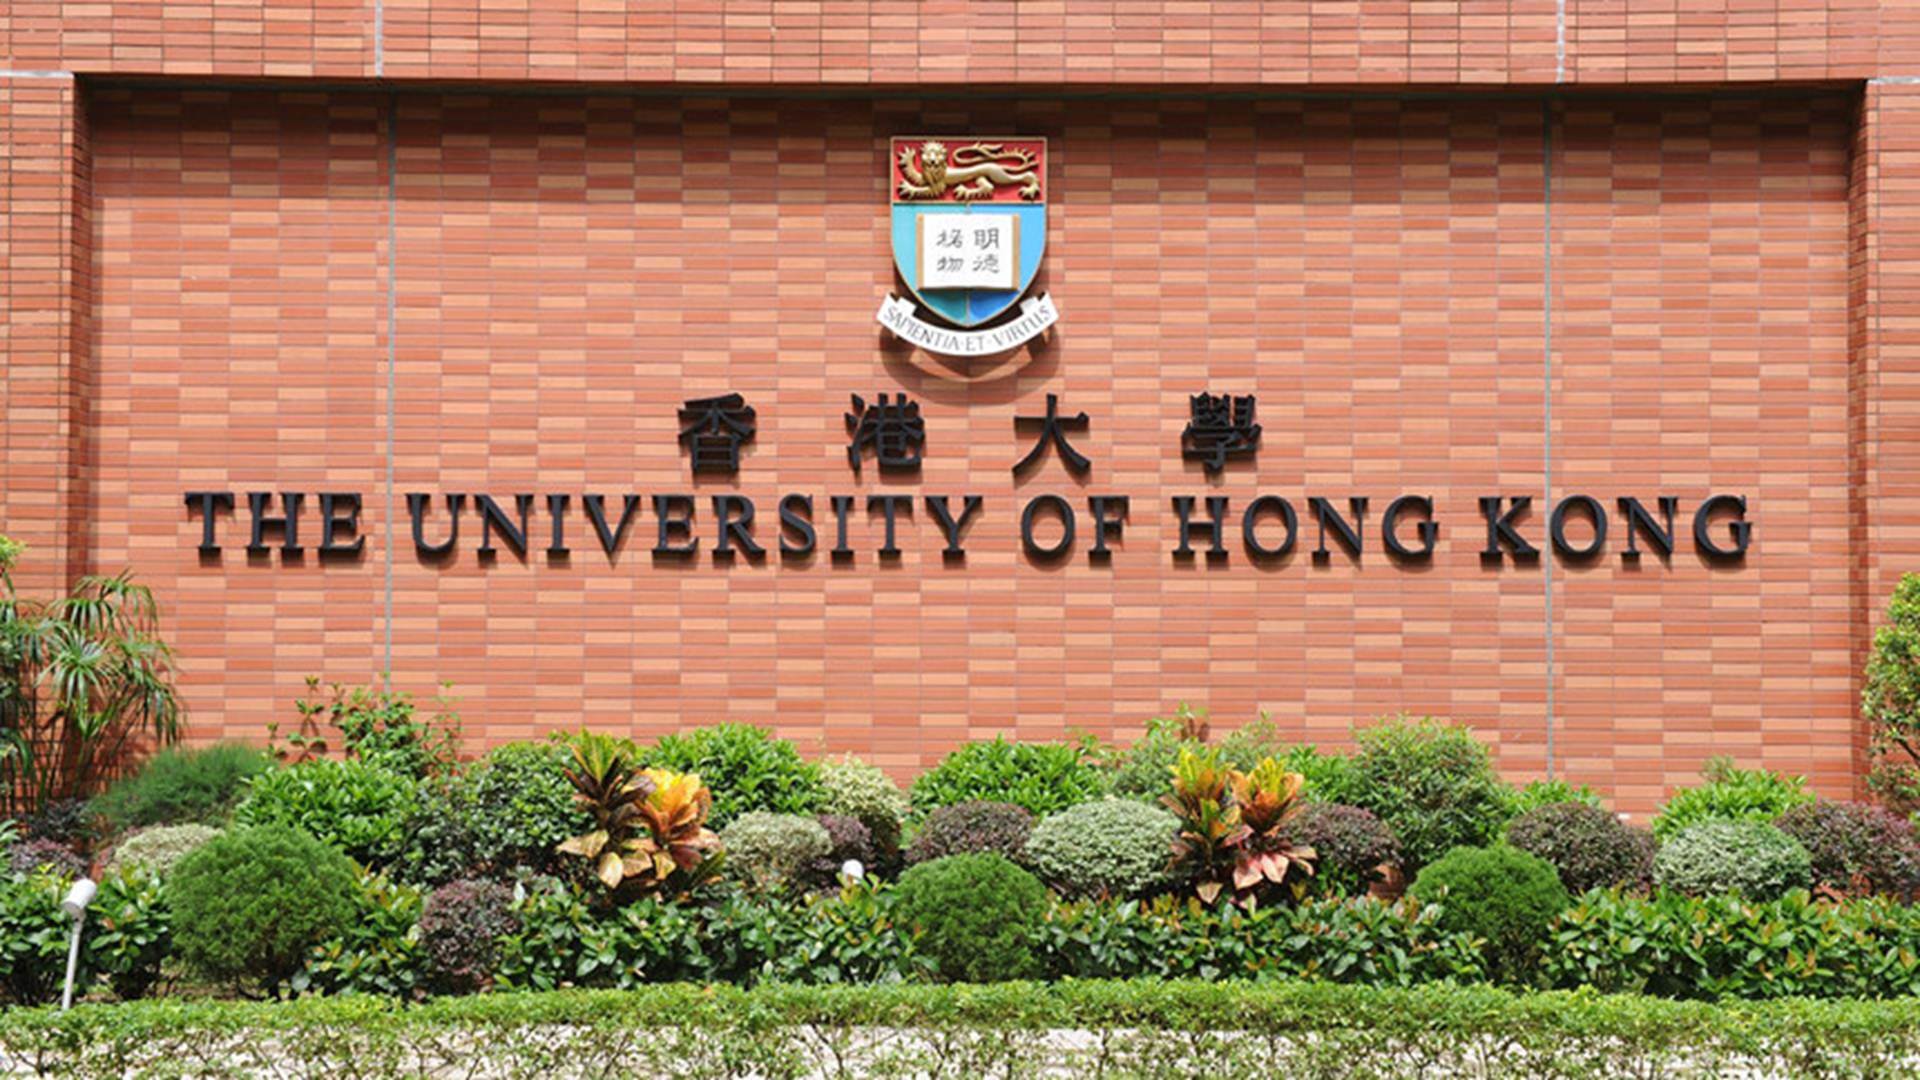 Trung Quốc dẫn đầu bảng xếp hạng trường đại học tốt nhất châu Á 2019-4